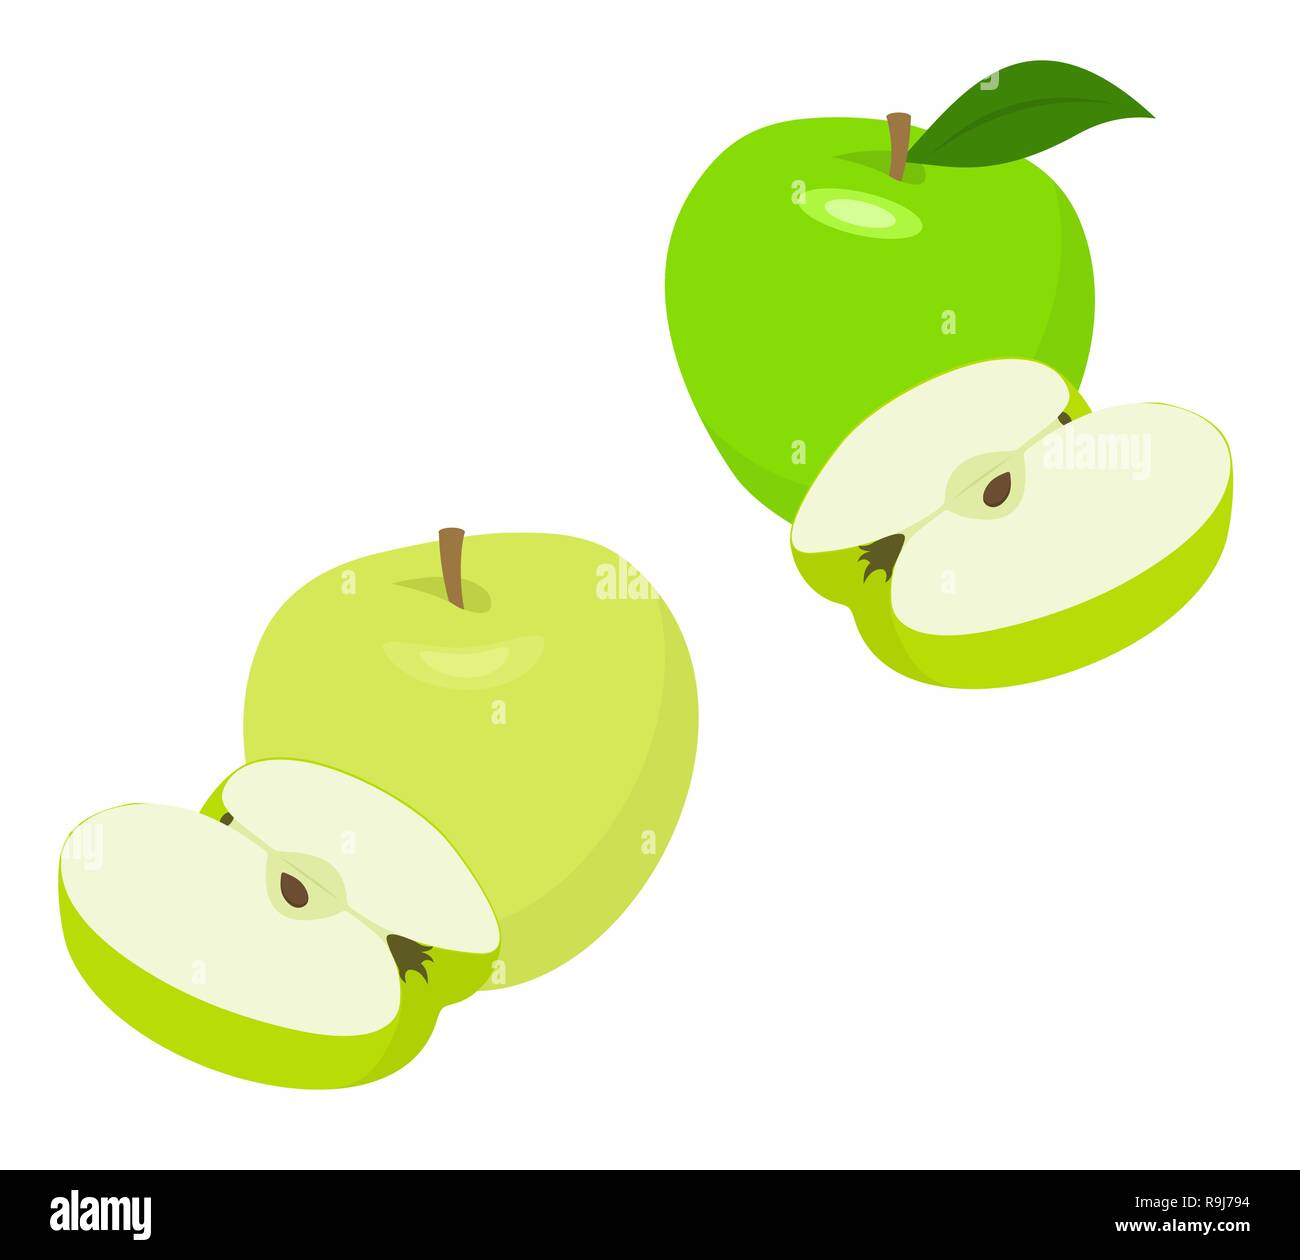 Mature verde mela frutta con semi di Apple e Apple leaf isolati su sfondo bianco. Le mele e le foglie con illustrazione vettoriale Illustrazione Vettoriale